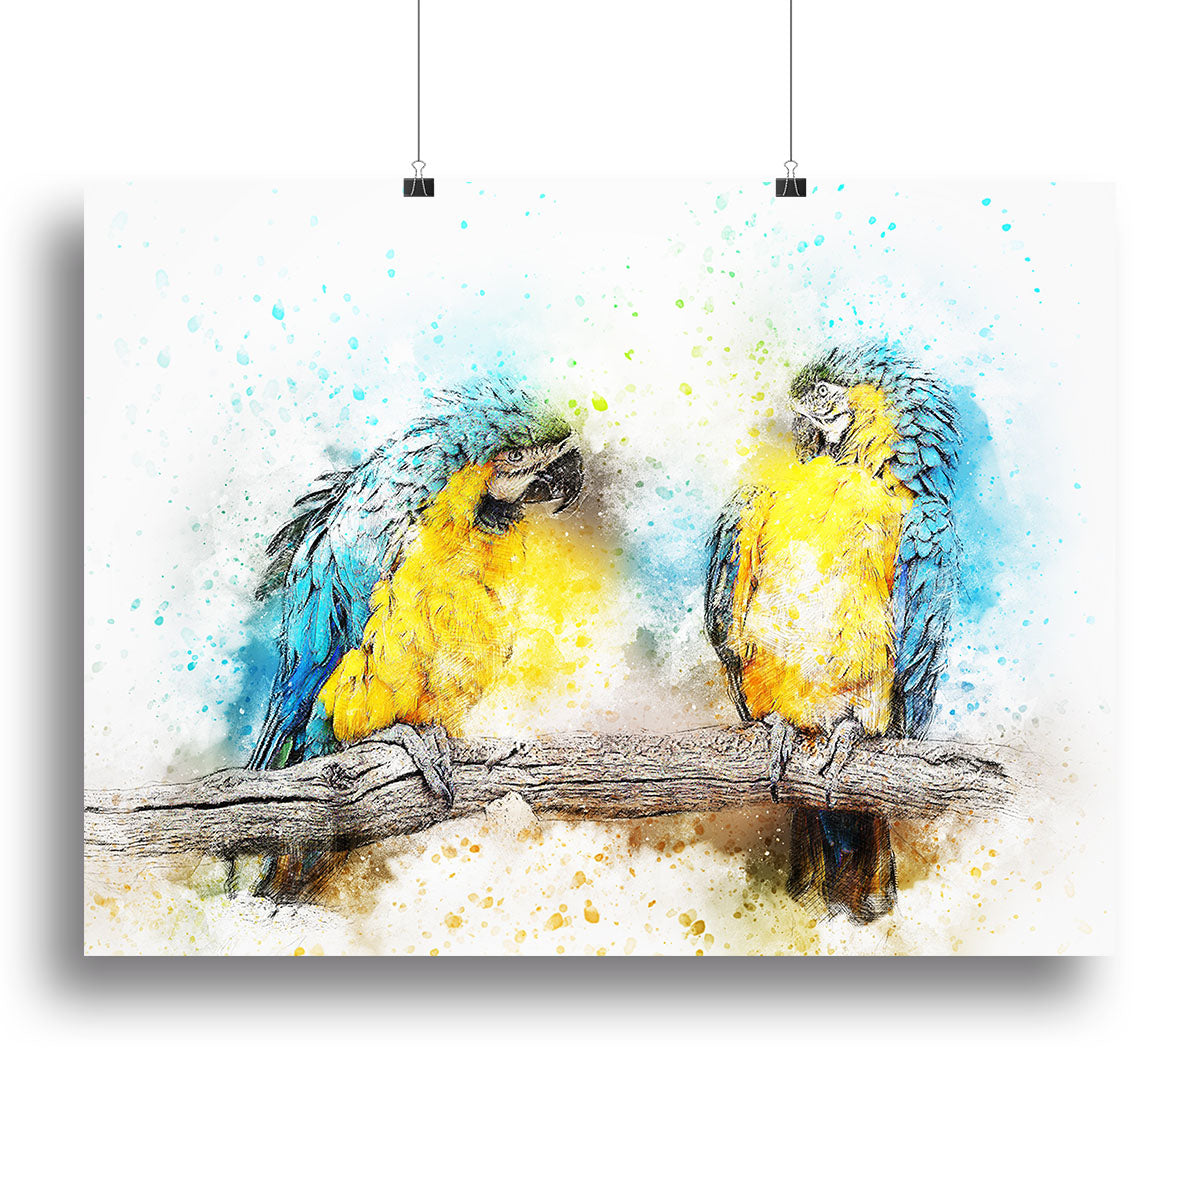 Watercolour Parrots Canvas Print or Poster - Canvas Art Rocks - 2